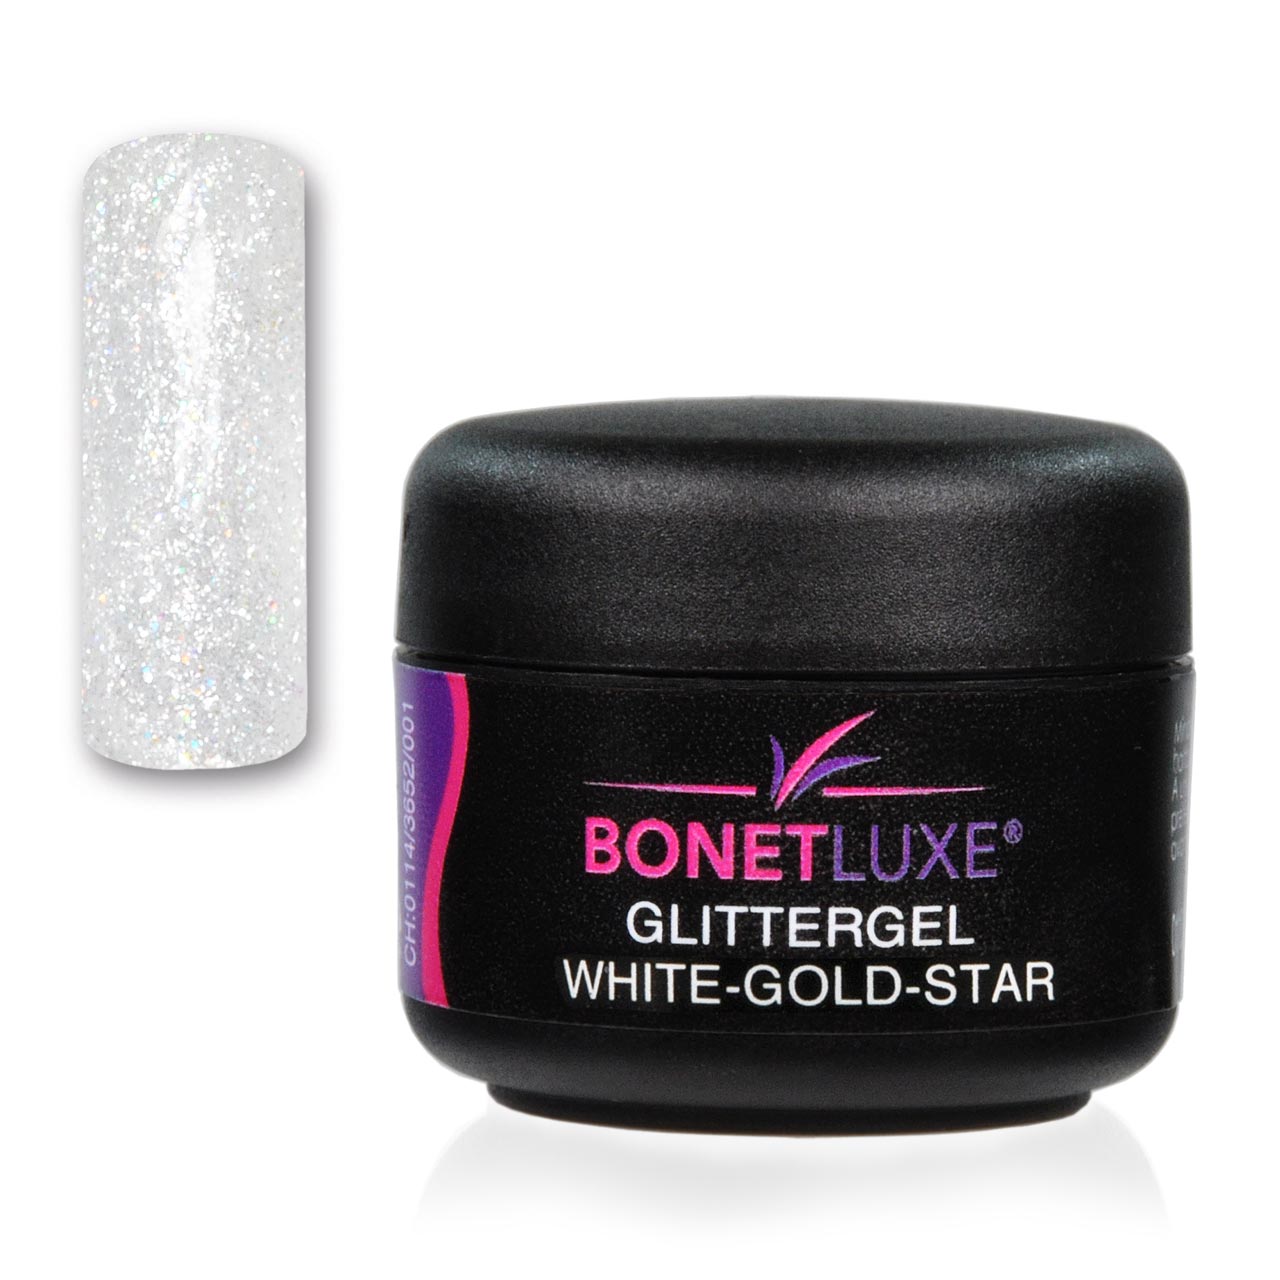 Bonetluxe Glittergel White-Gold Star